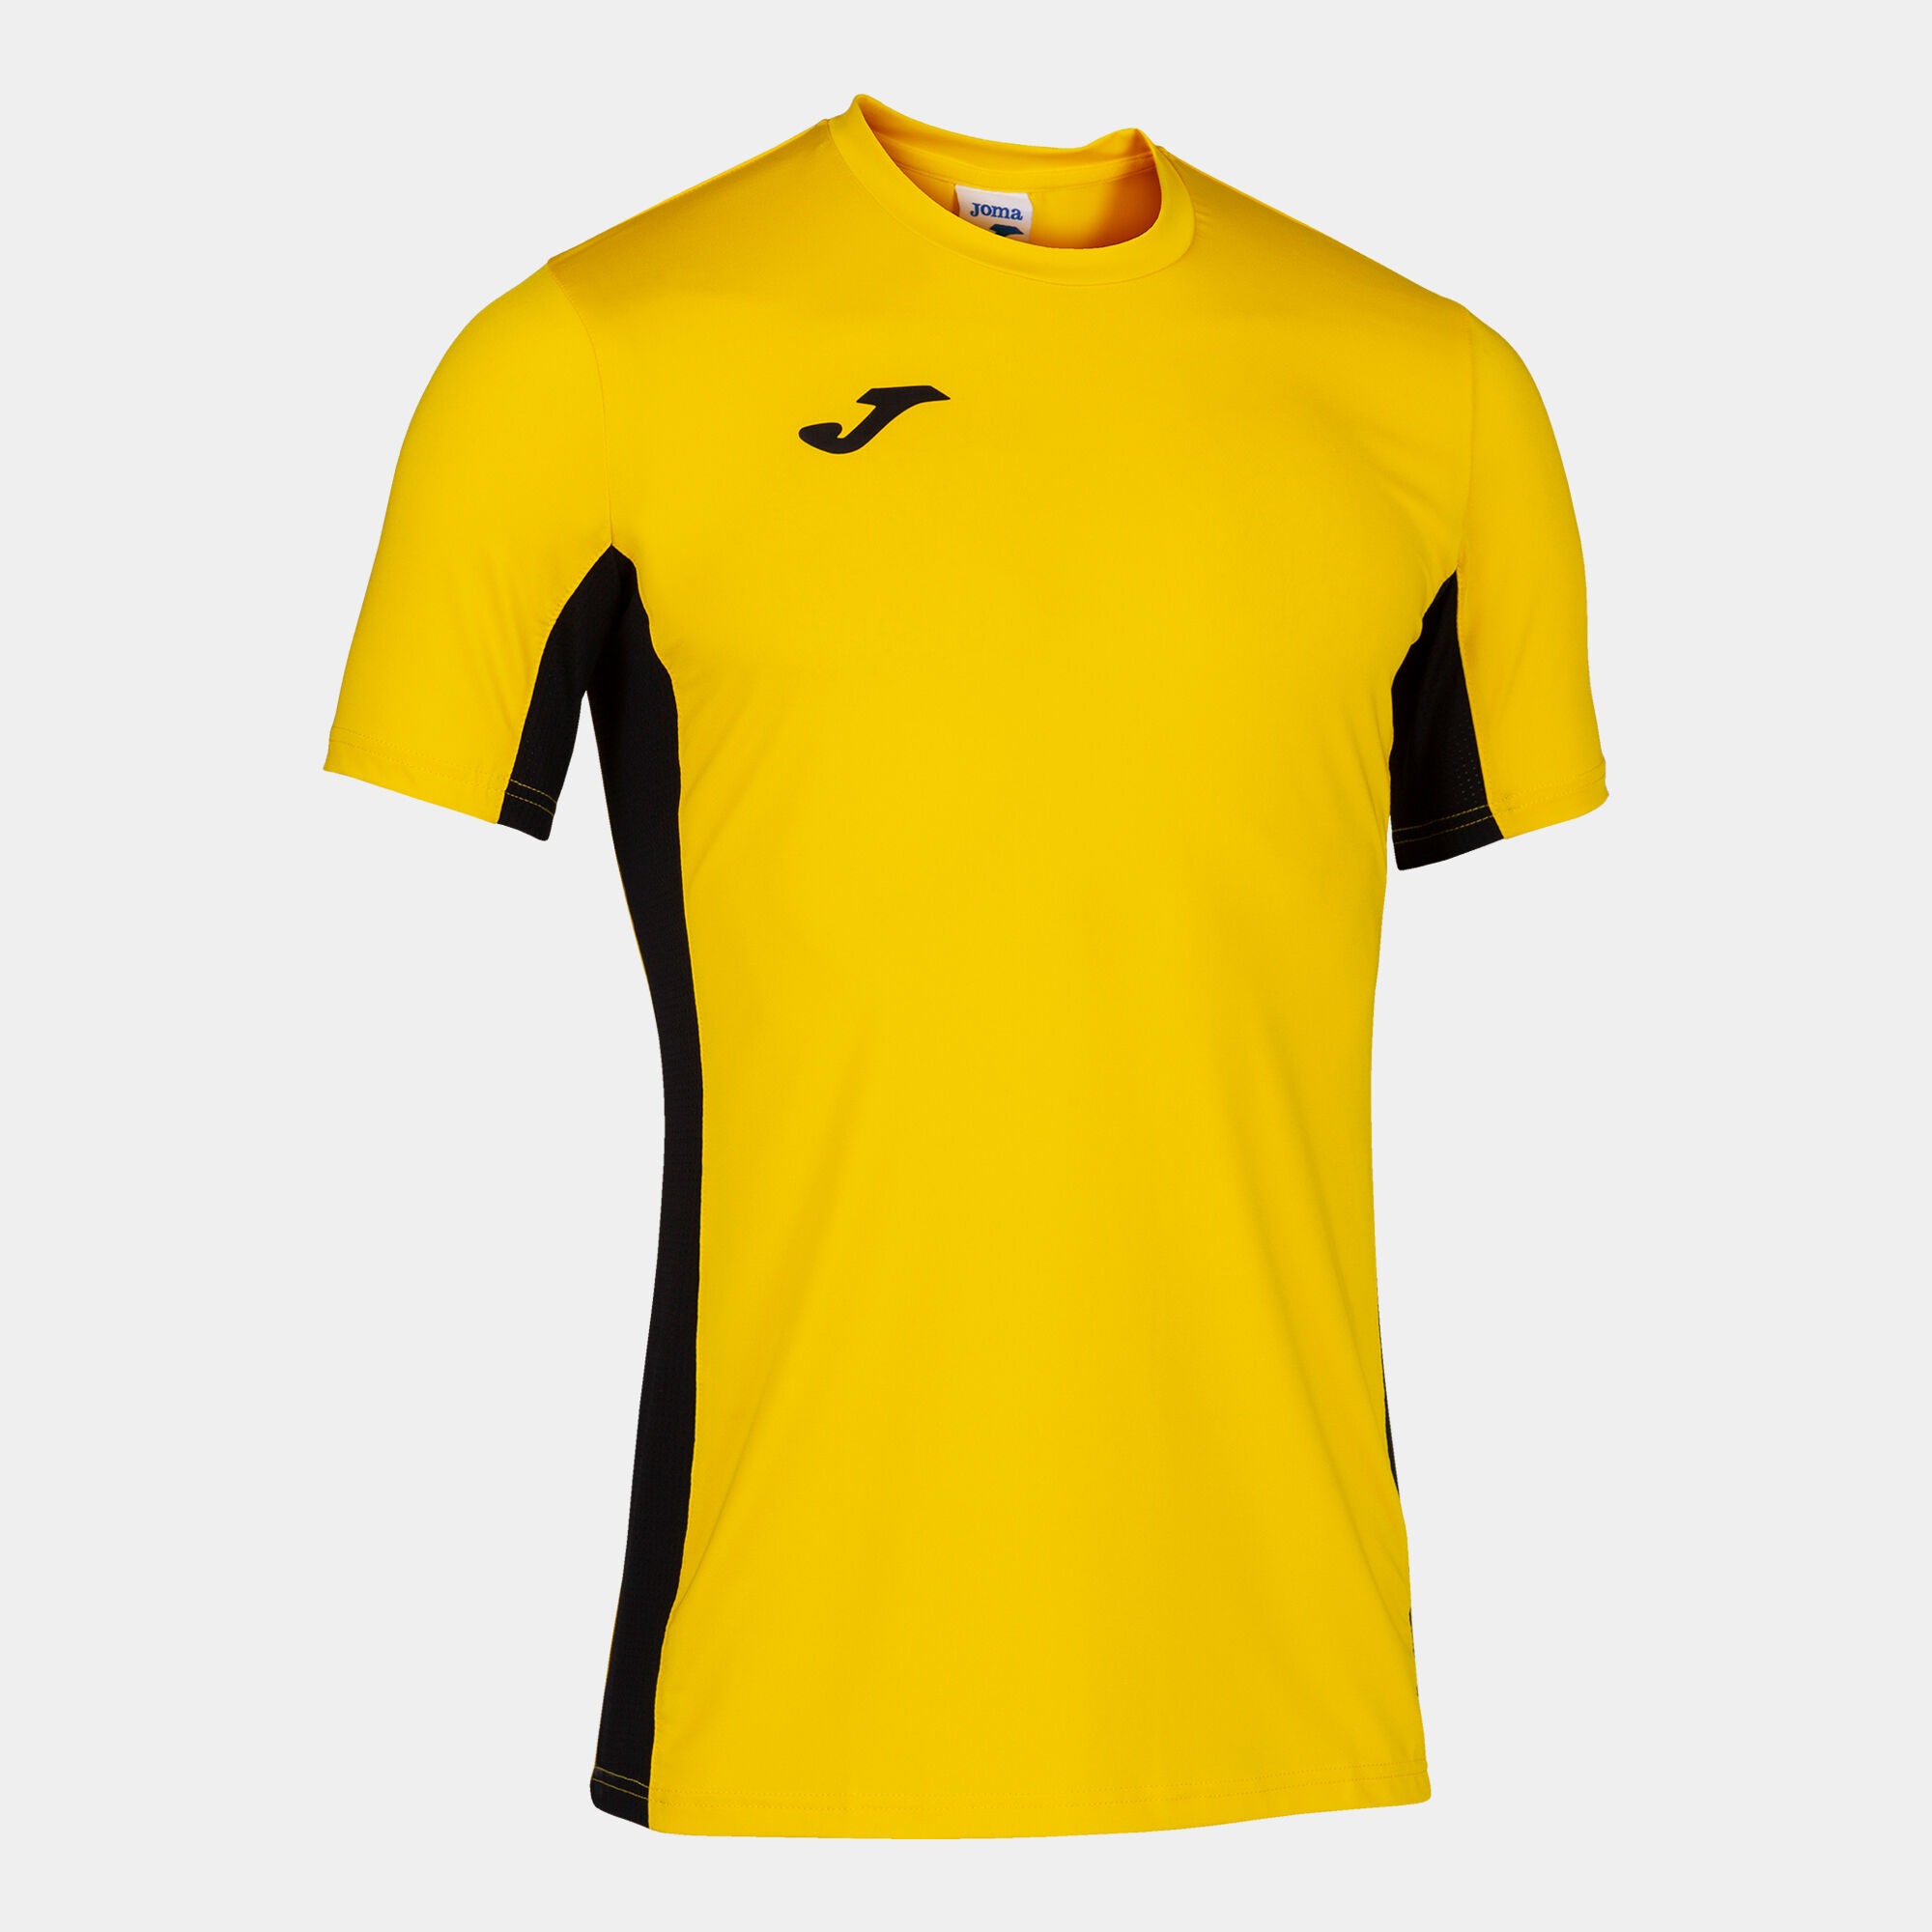 Camiseta manga corta hombre Superliga amarillo negro